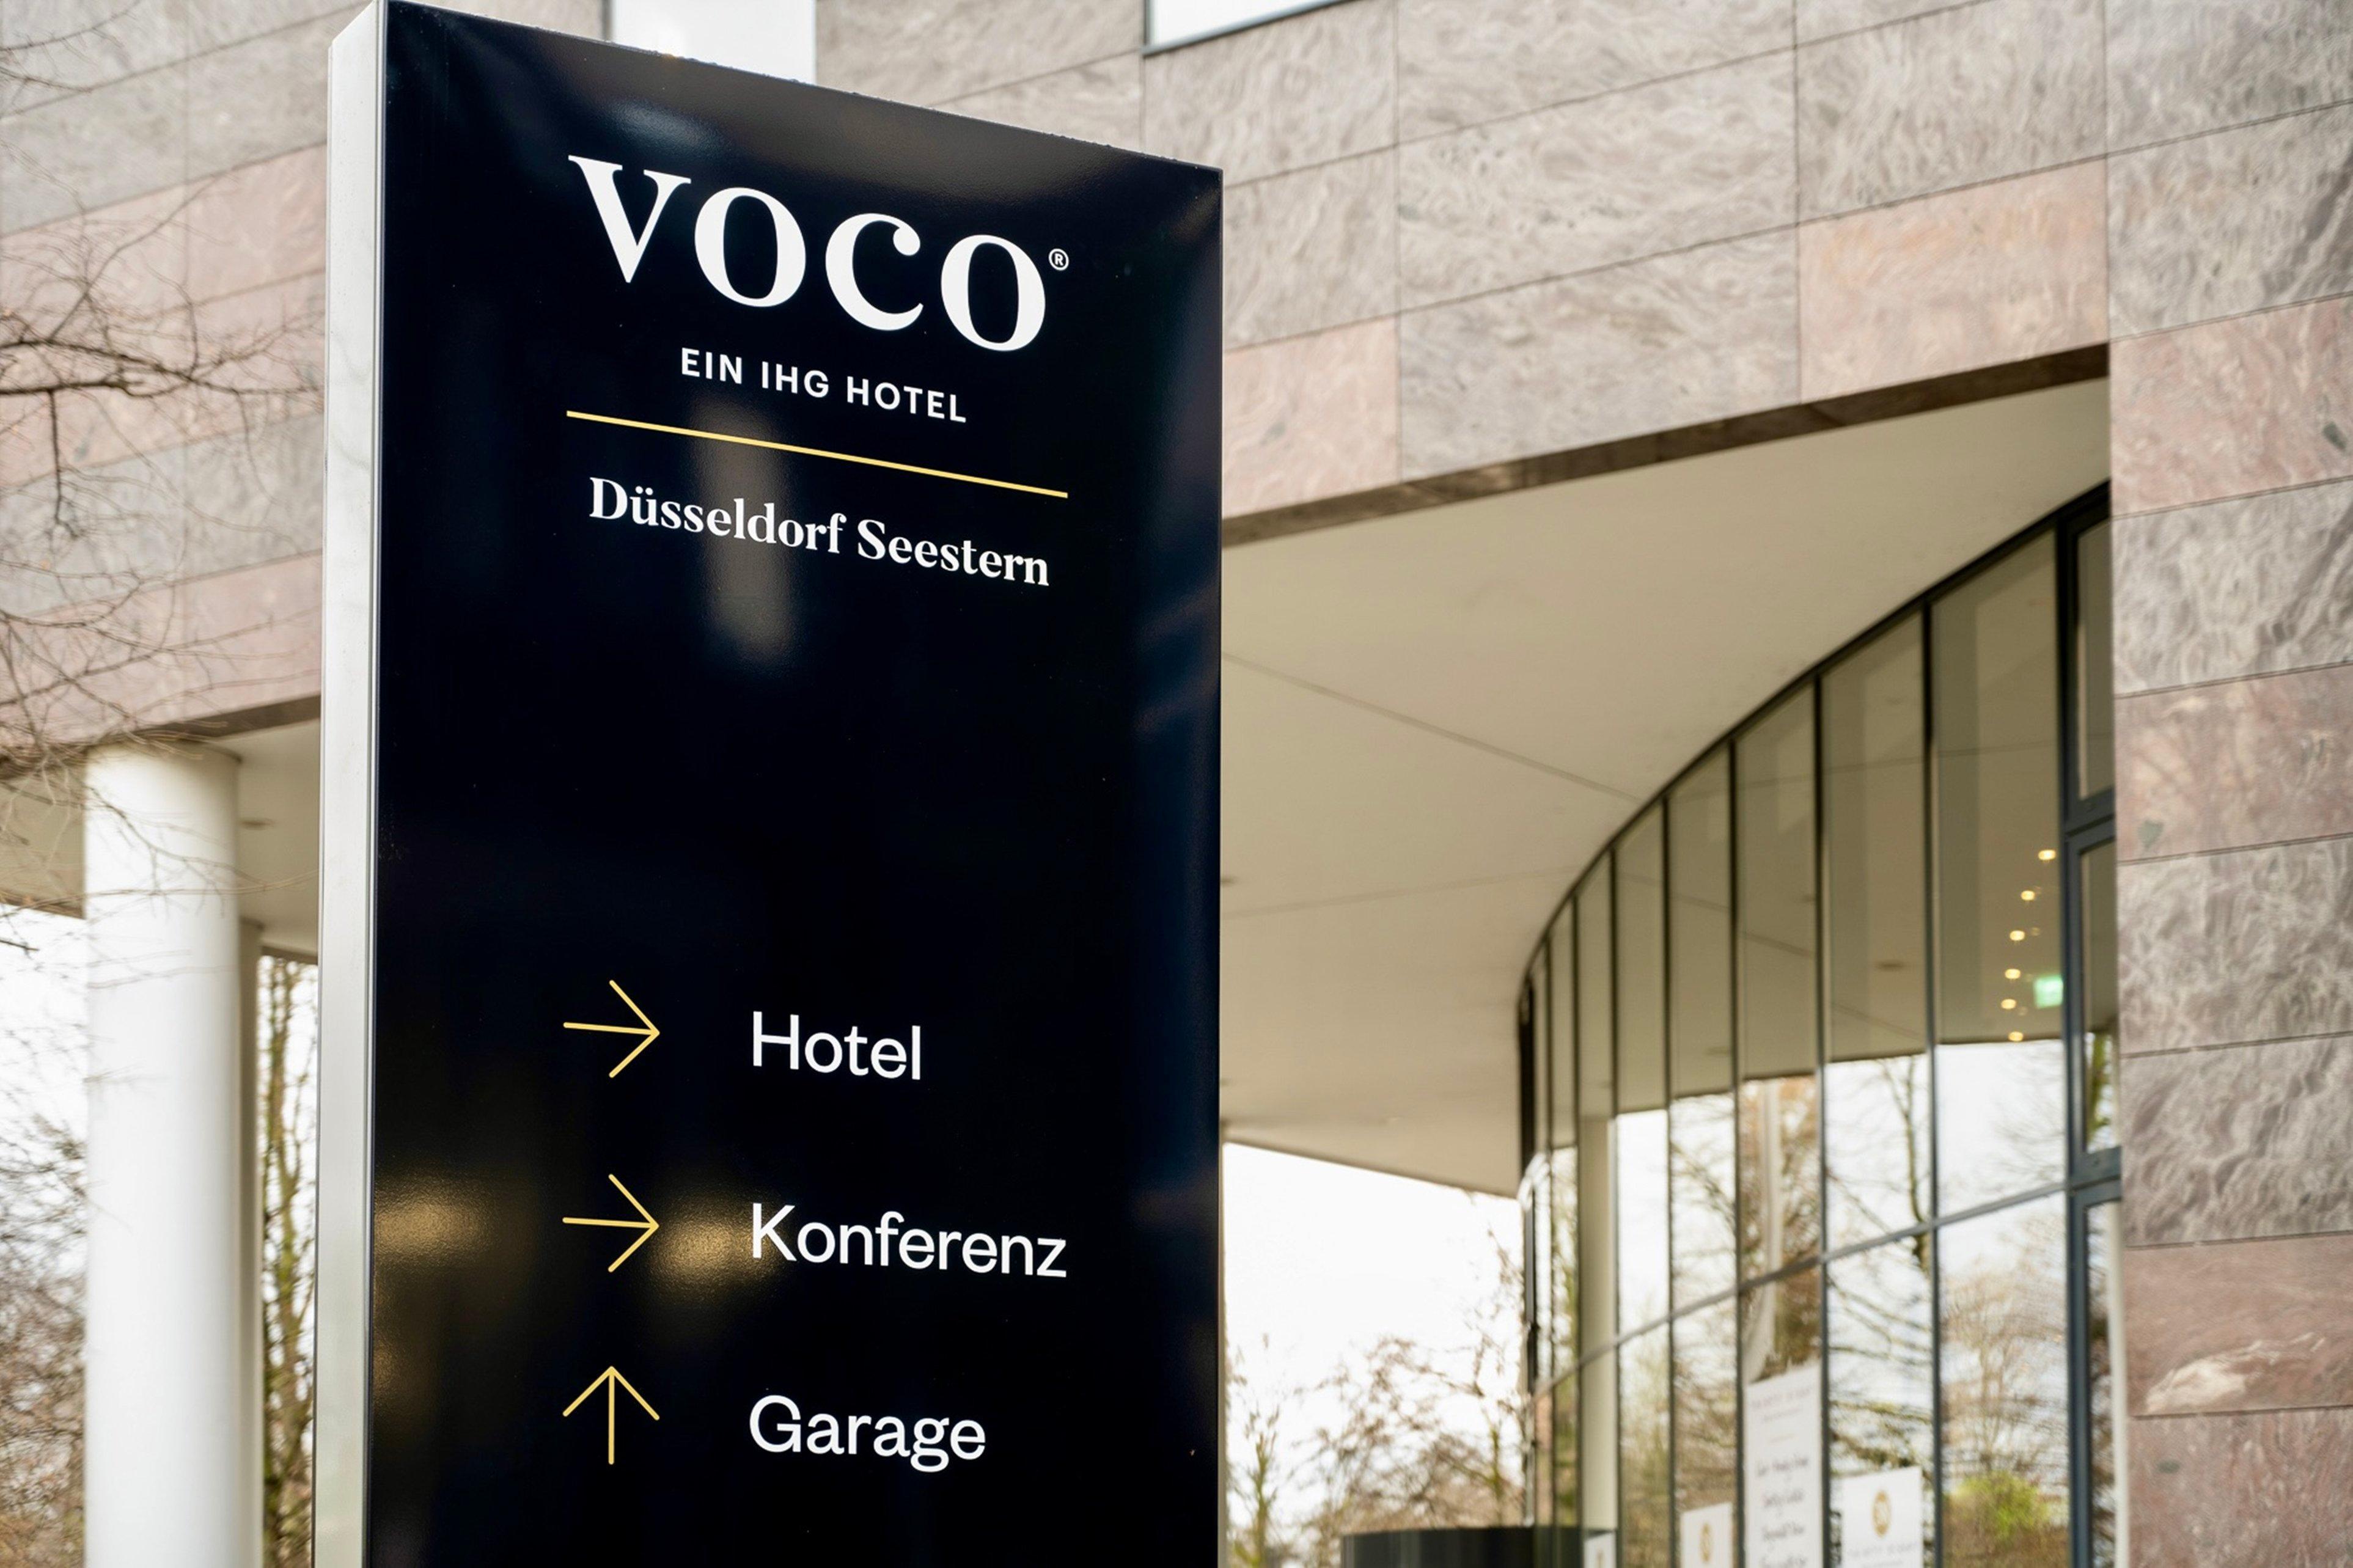 Voco Dusseldorf Seestern, An Ihg Hotel Экстерьер фото